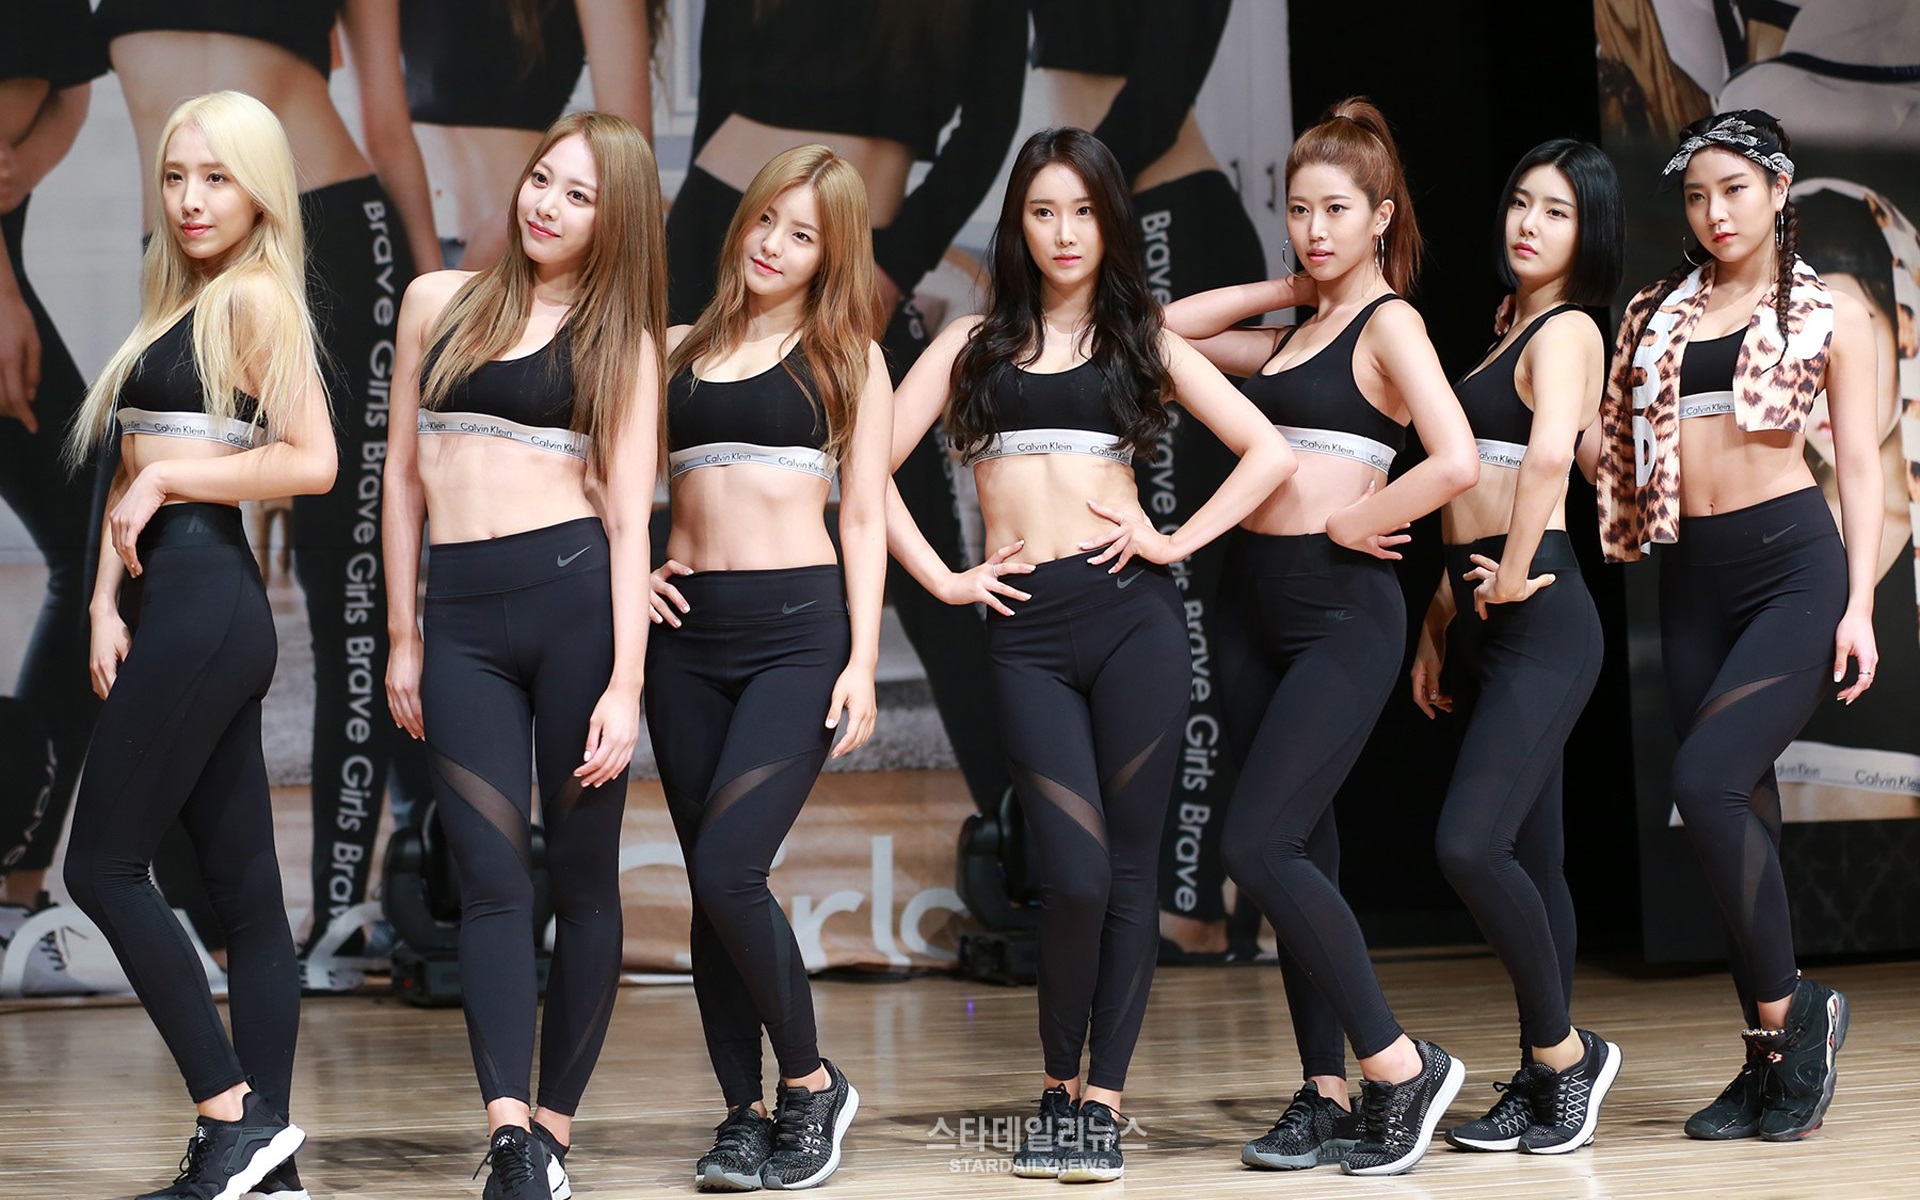 Korean Girl Group Wallpaper - Korean Girl Music Groups , HD Wallpaper & Backgrounds